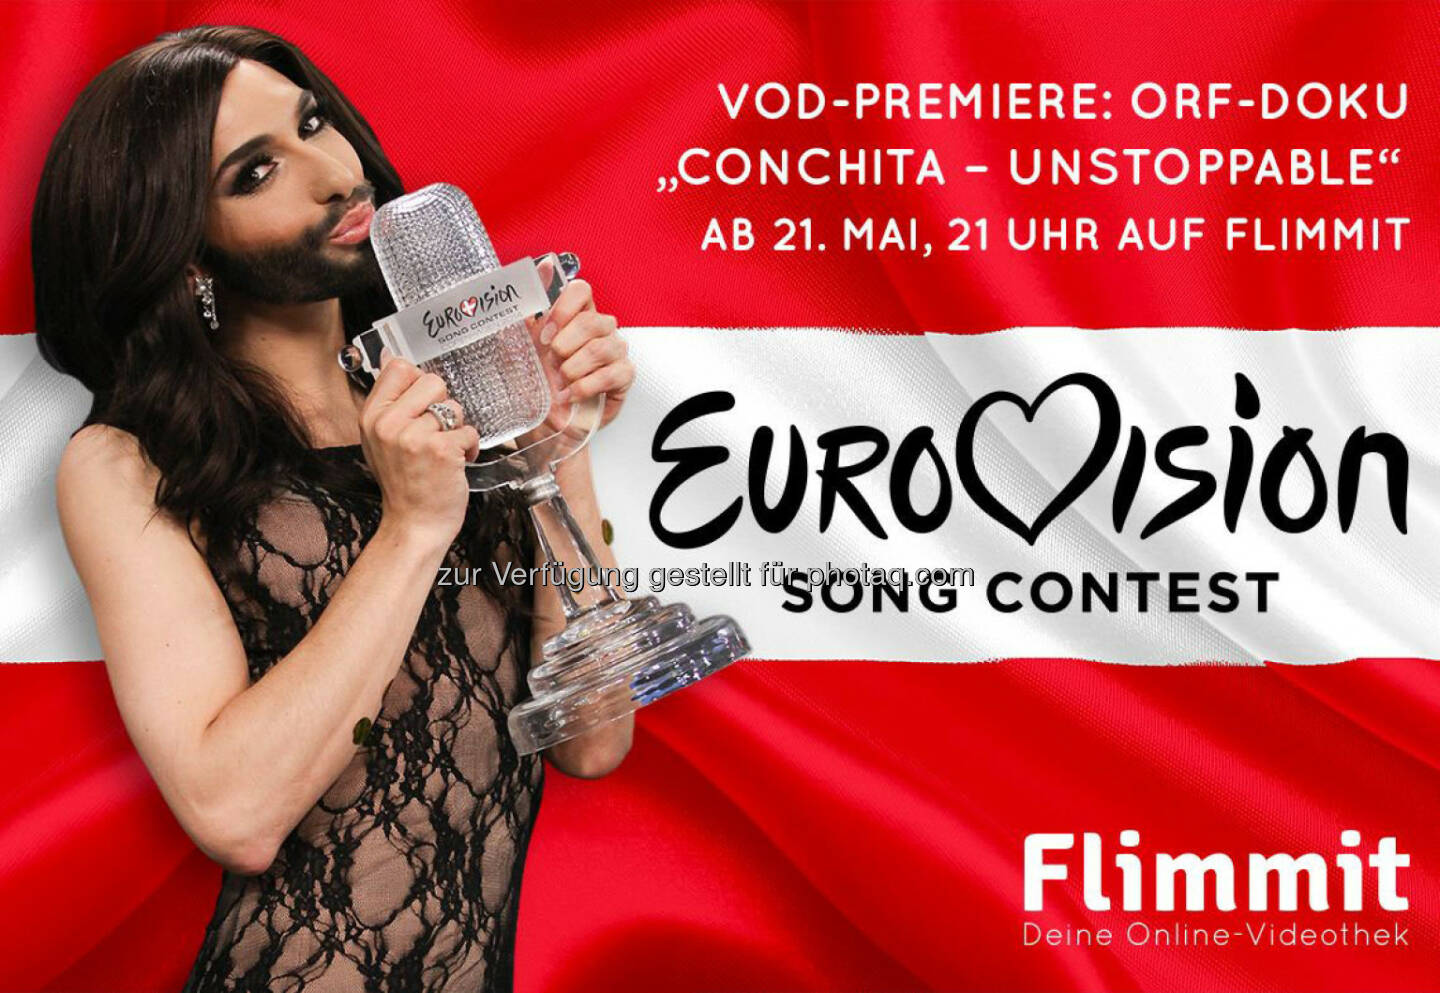 Conchita Wurst-Dokus zum Song Contest auf Flimmit